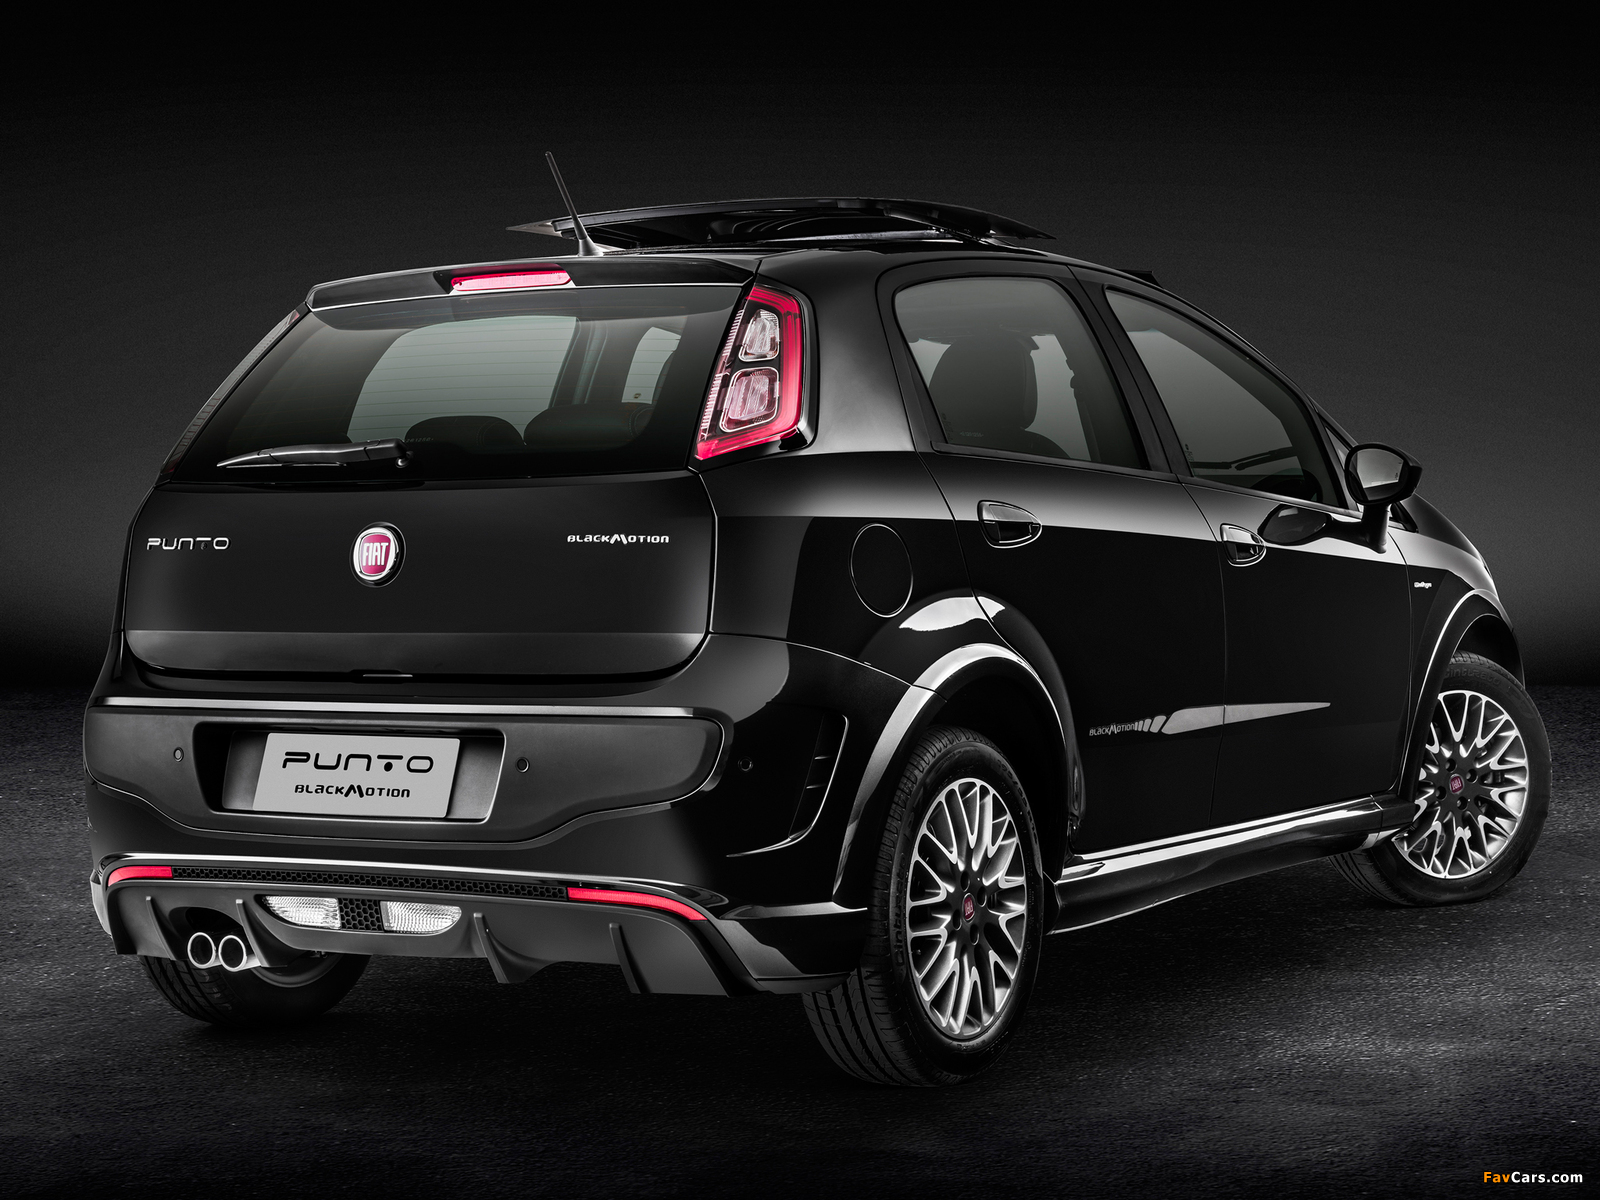 Fiat Punto BlackMotion (310) 2013 photos (1600 x 1200)